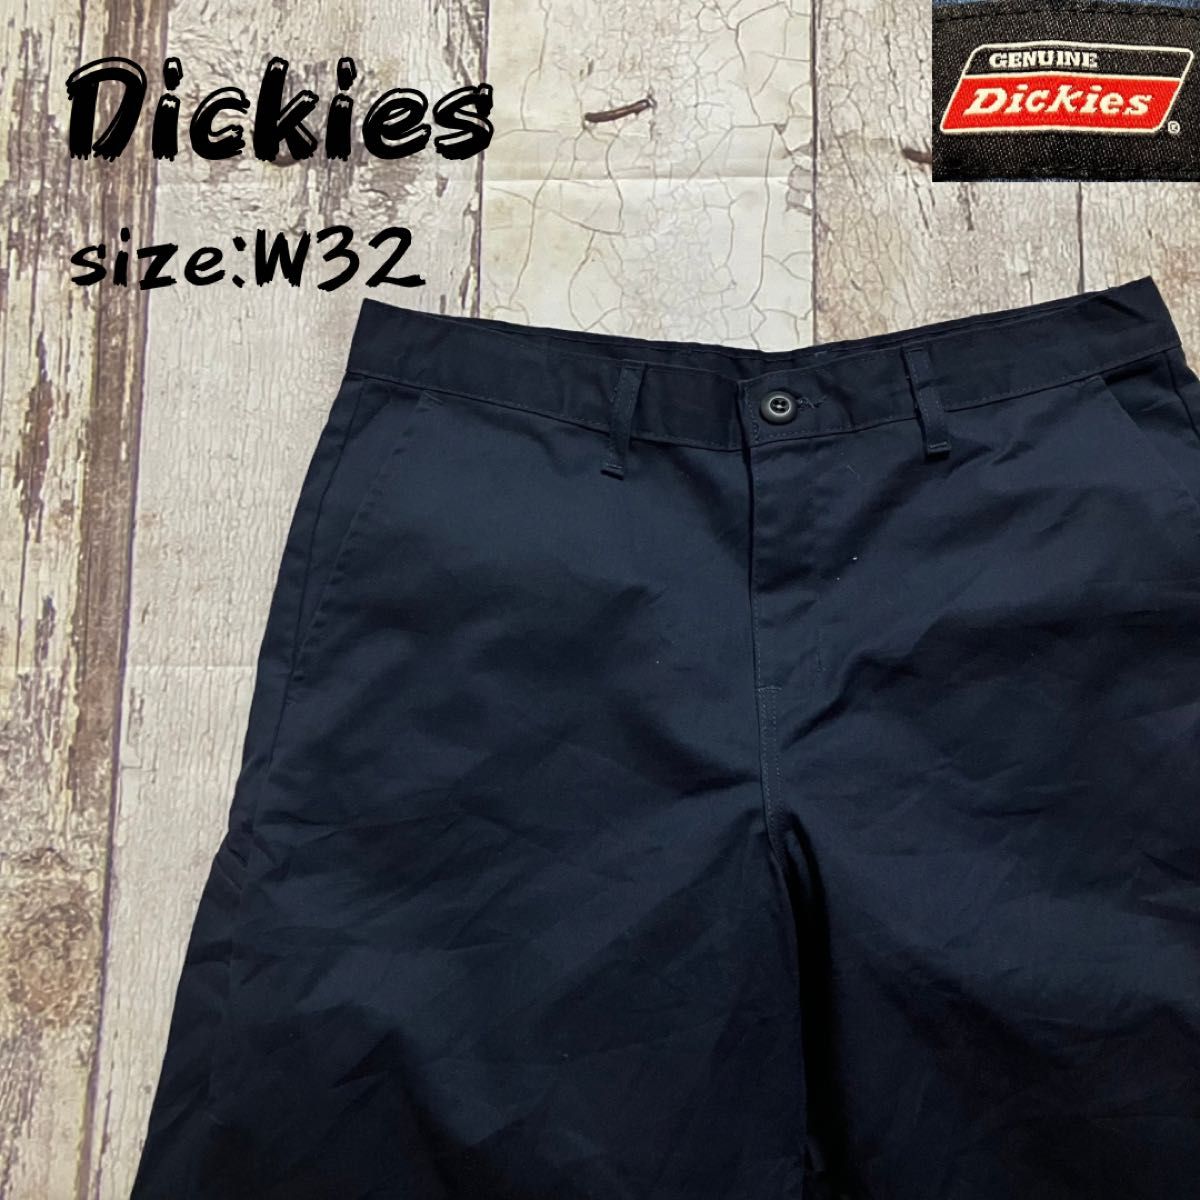 ディッキーズ Dickies ハーフパンツ ショートパンツ メンズ W32 チノパン GENUINE Dickies チカーノ